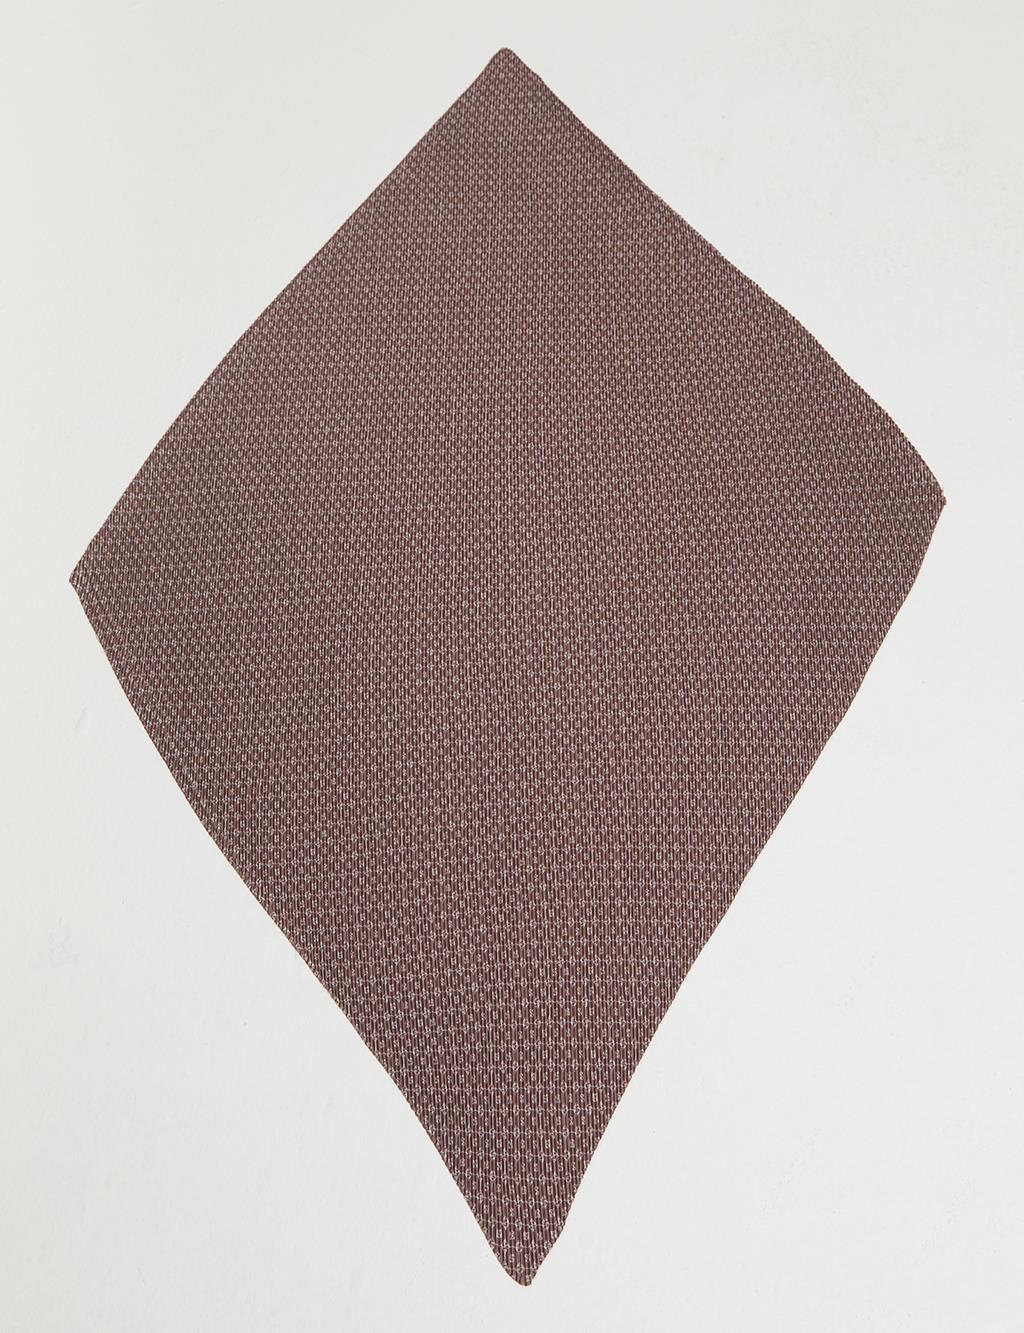 Плиссированный шарф с шестиугольной монограммой Молочно-коричневый Kayra